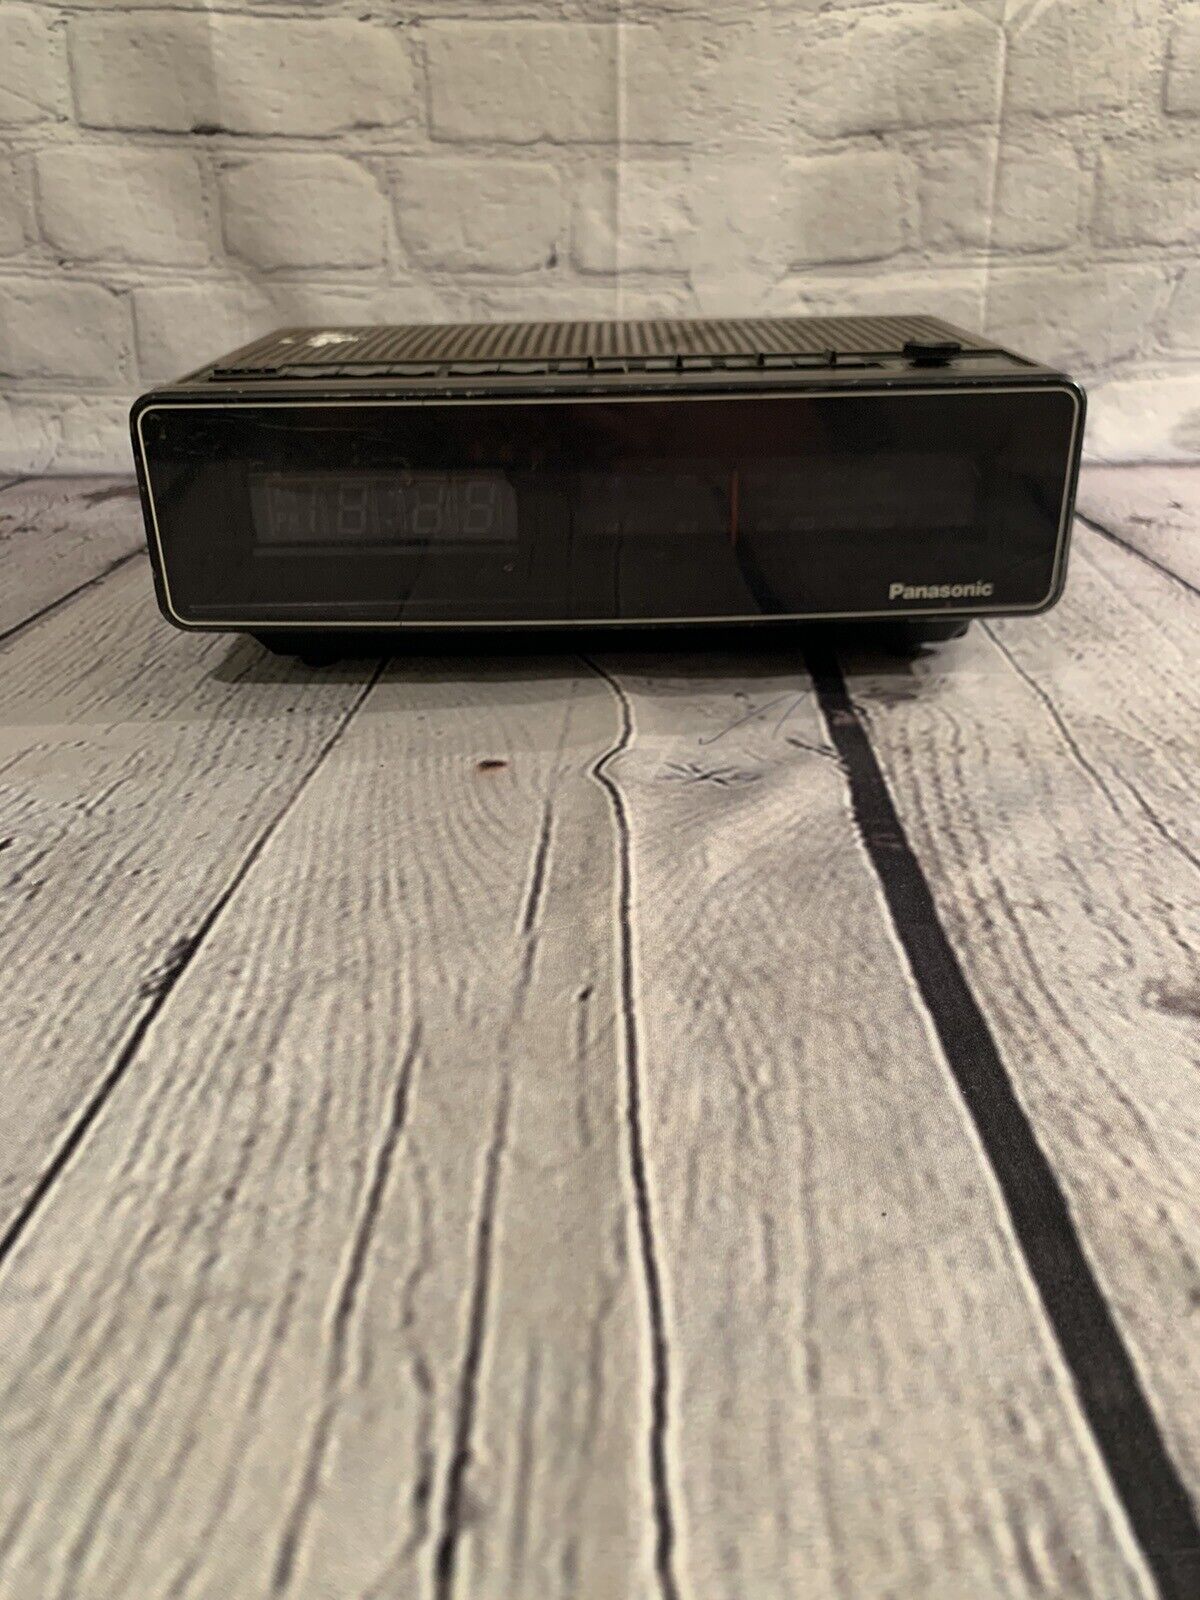 Panasonic Digital Clock Radio RC-100 AM FM Alarm Vintage Wood Grain-TESTED-WORKS